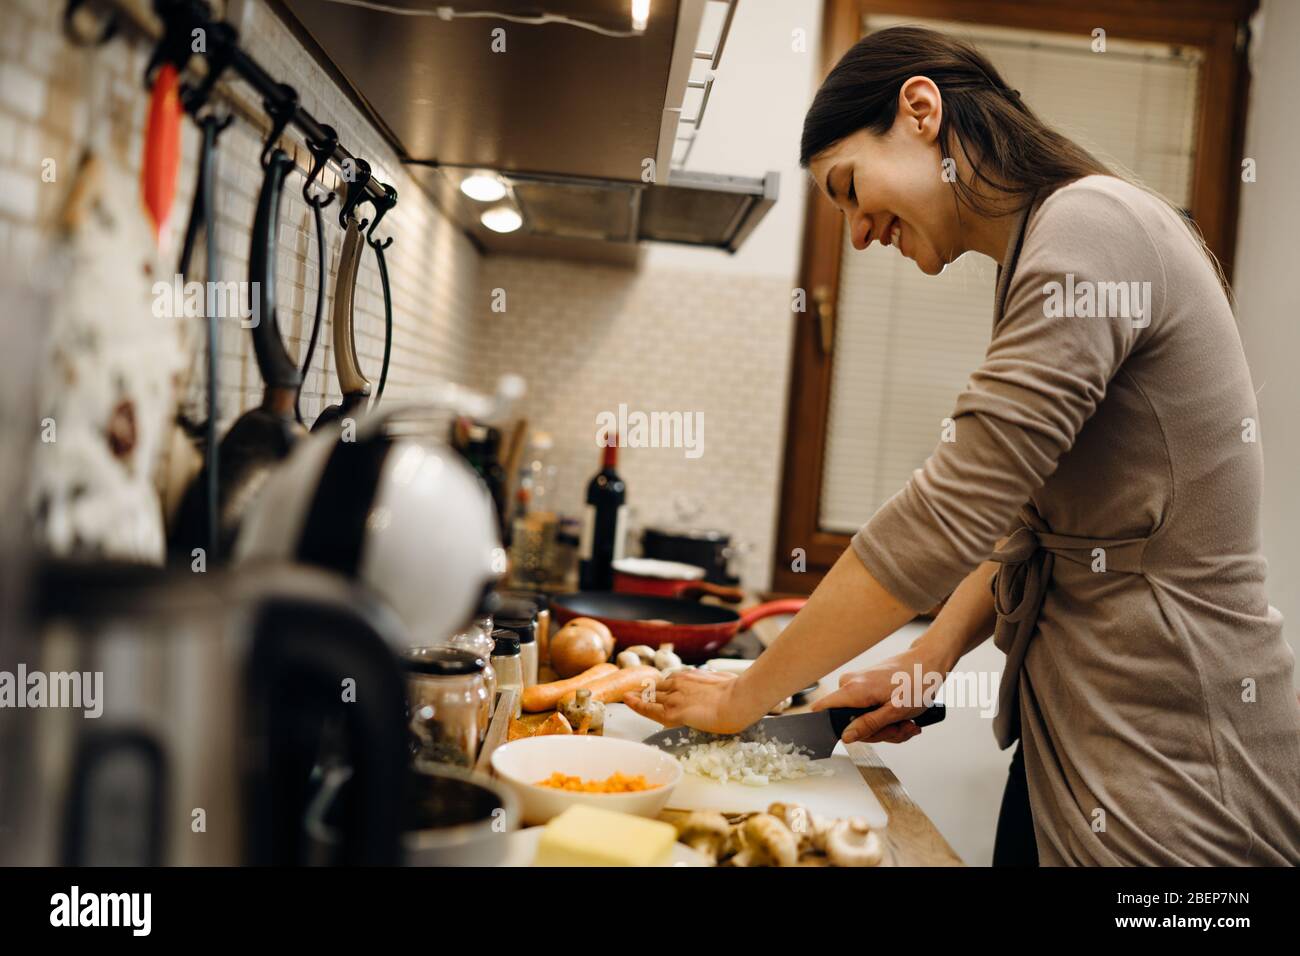 Jeune femme de ménage débutant cuisinier couper l'oignon.tranche d'oignons sur un tableau de découpe.tranche,dés et hacher l'oignon.préparation pour la cuisson. Alimentation saine et li Banque D'Images